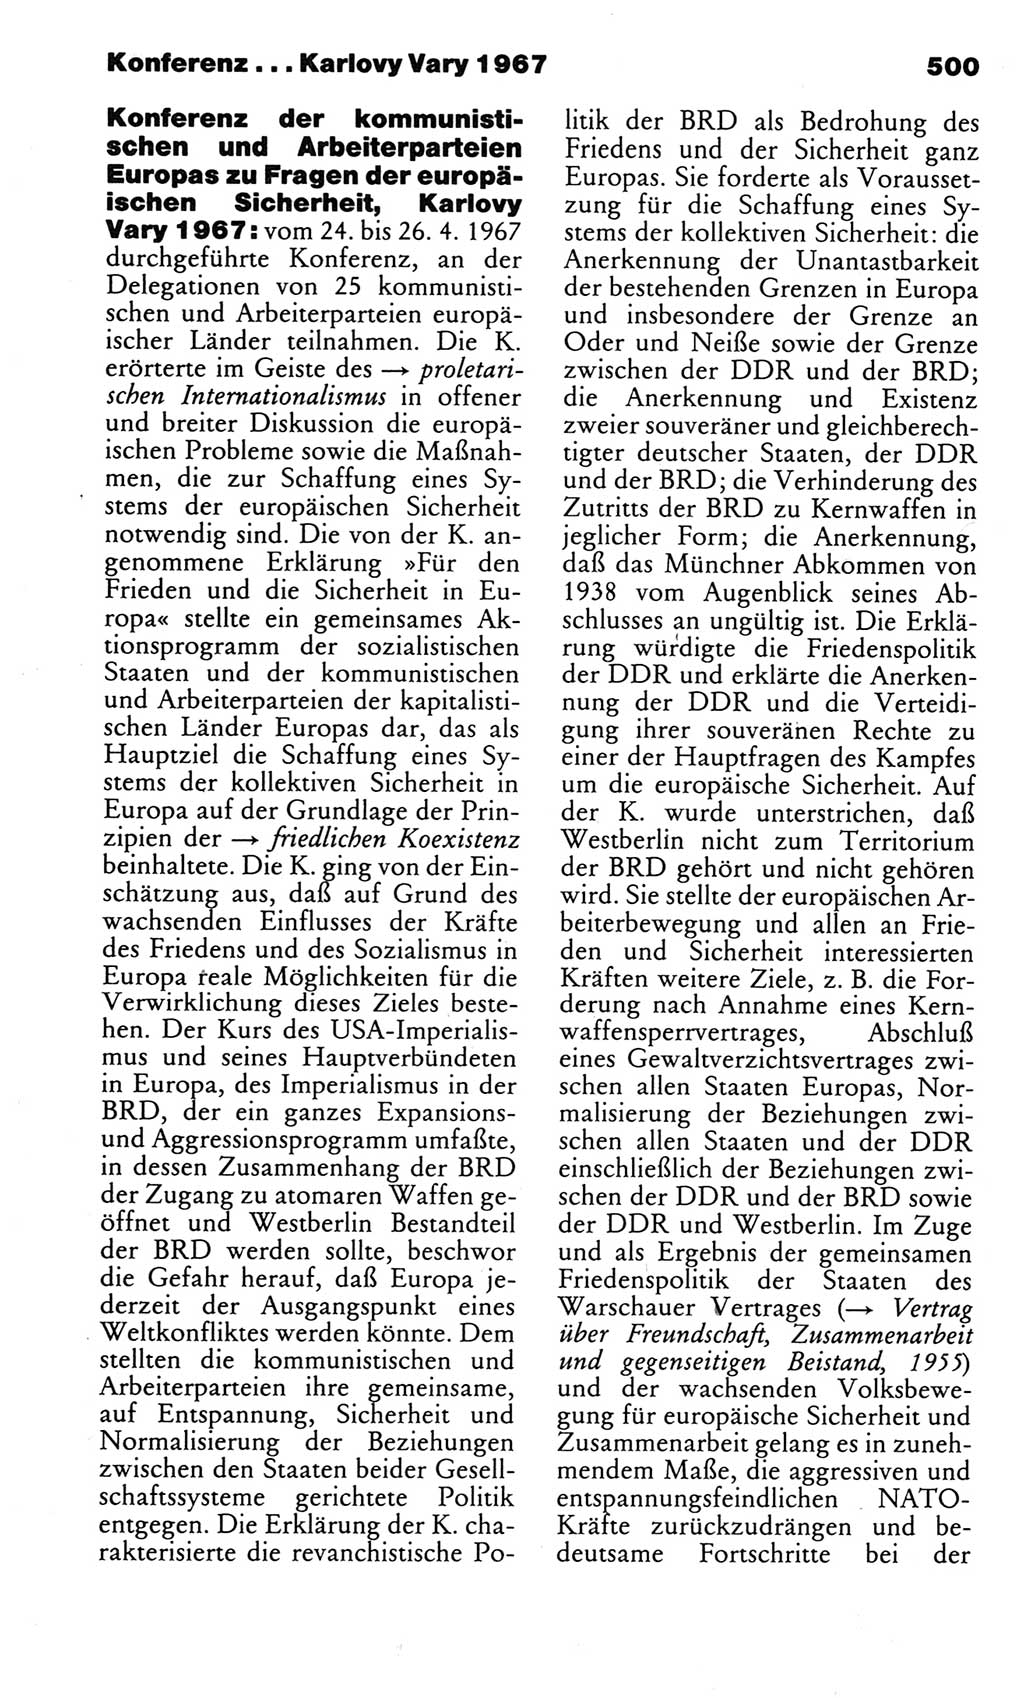 Kleines politisches Wörterbuch [Deutsche Demokratische Republik (DDR)] 1983, Seite 500 (Kl. pol. Wb. DDR 1983, S. 500)